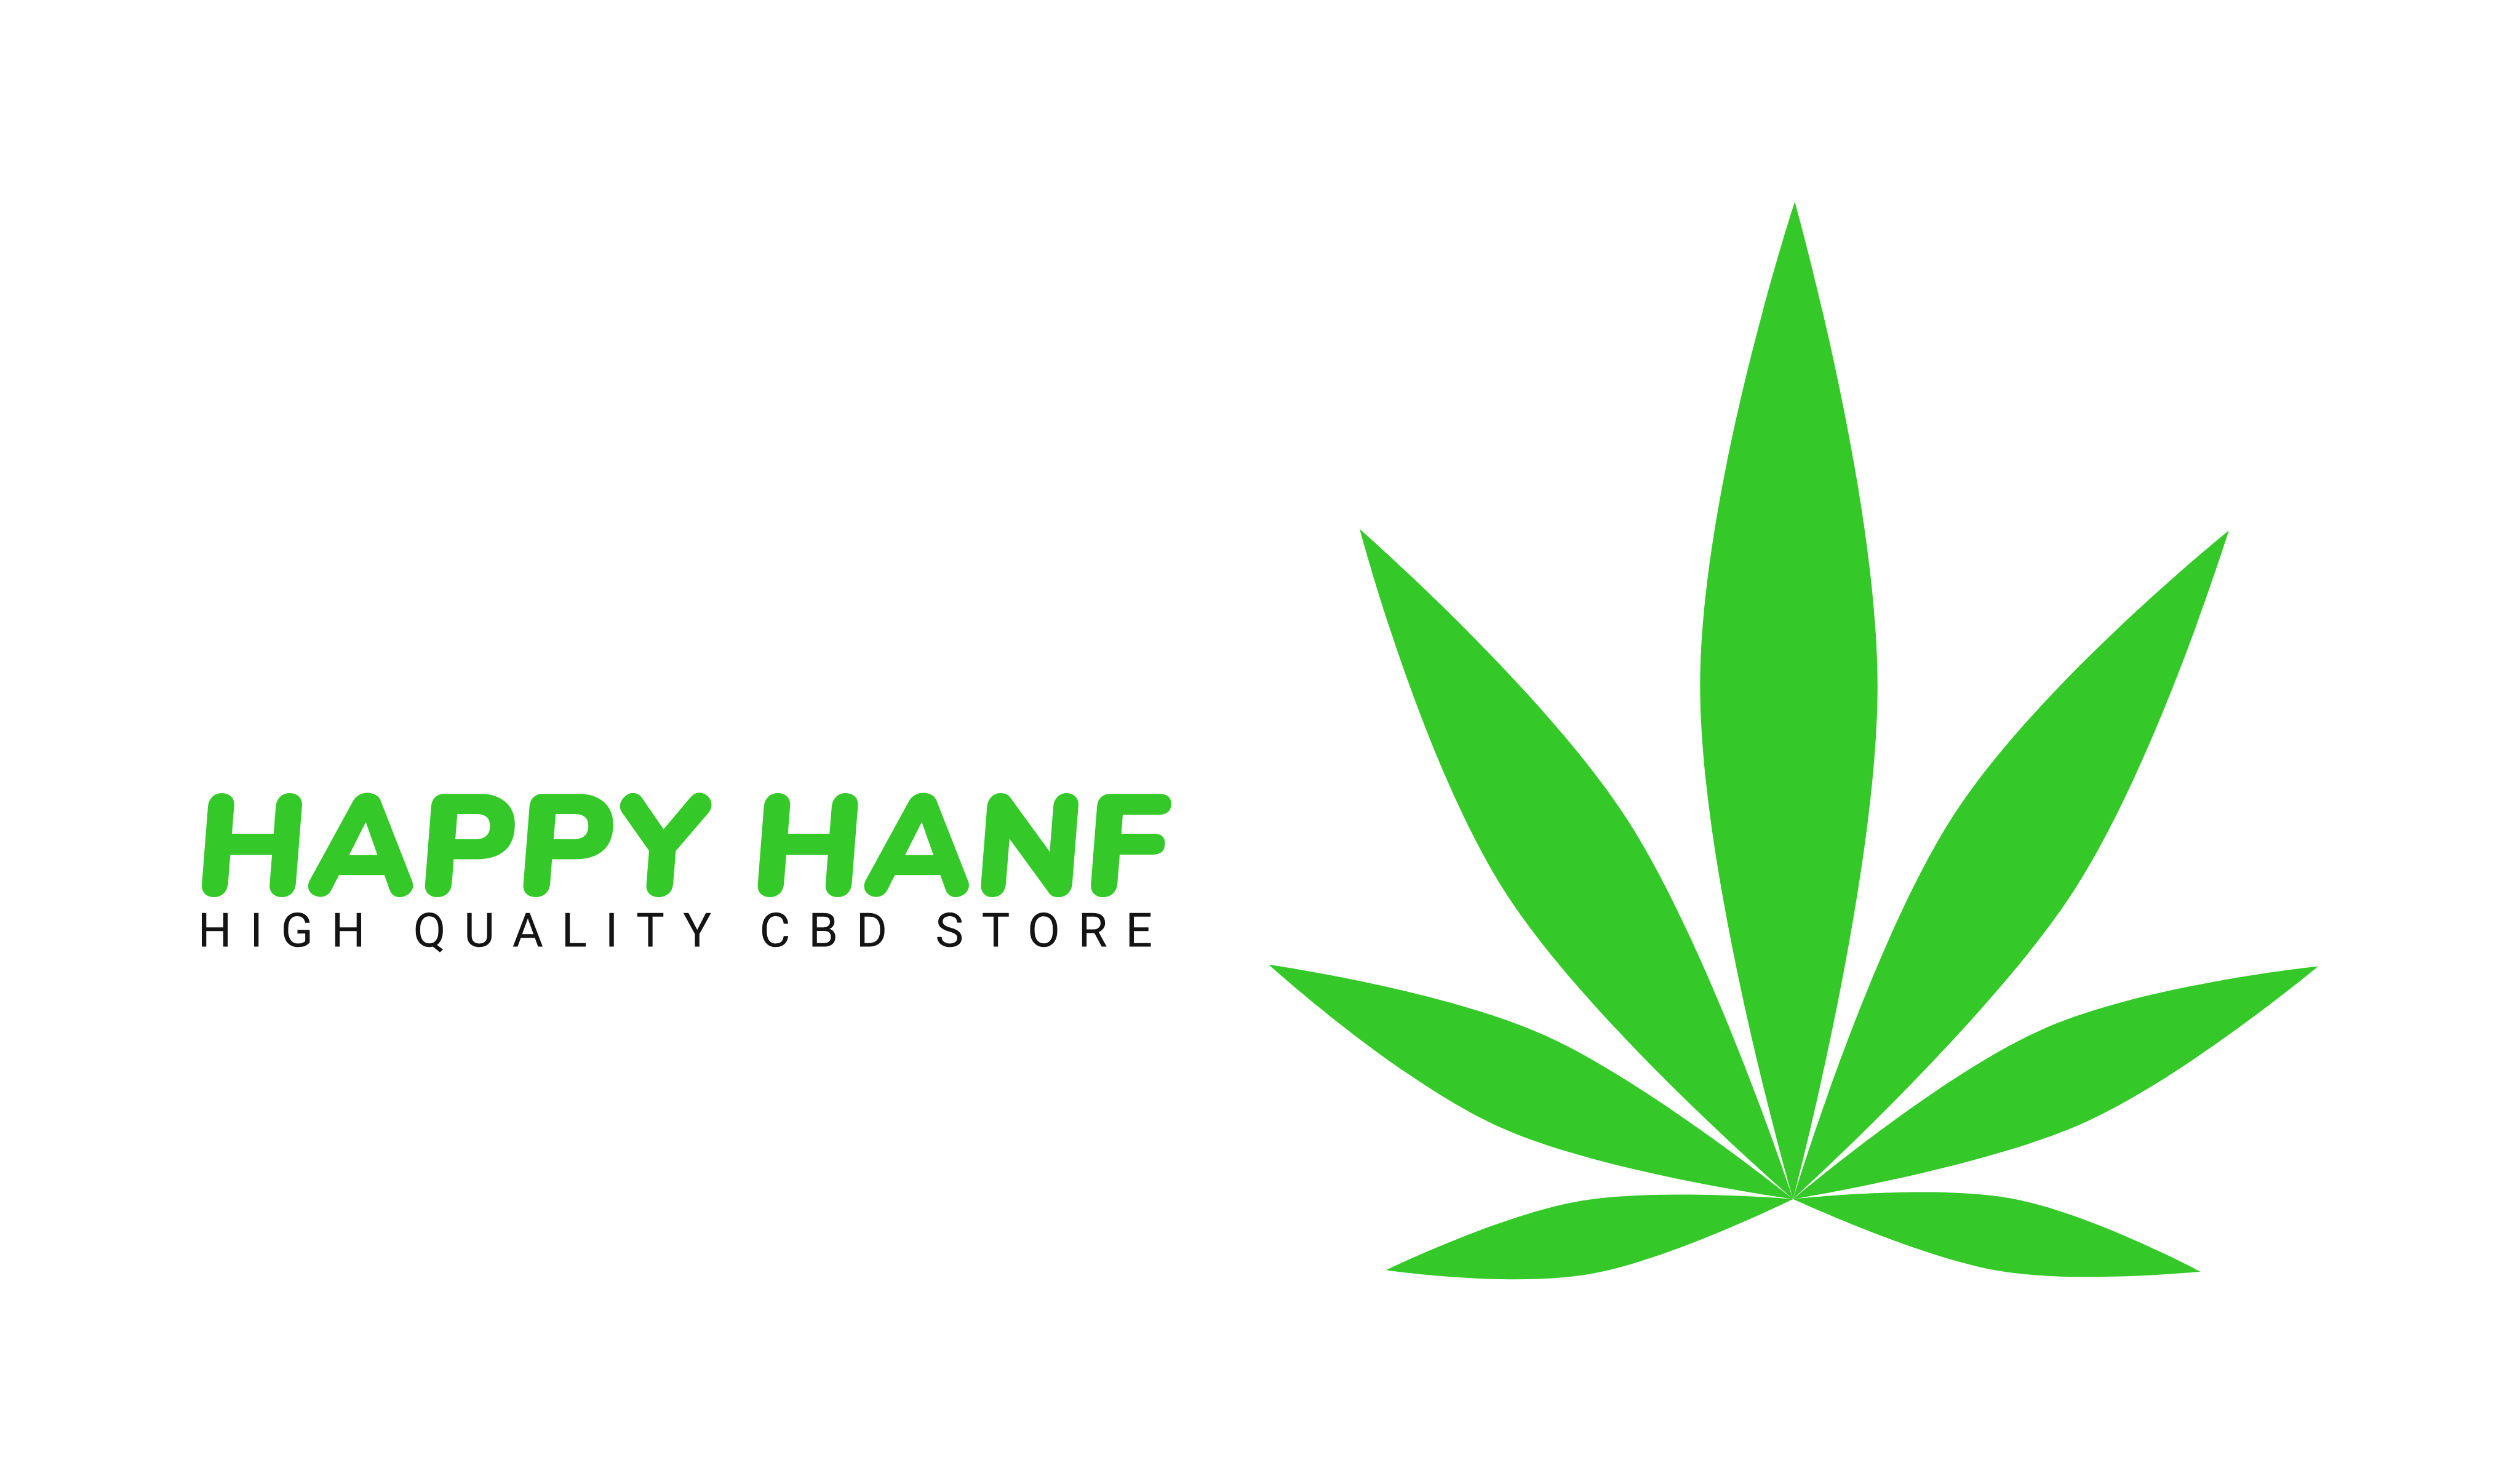 (c) Happy-hanf.at